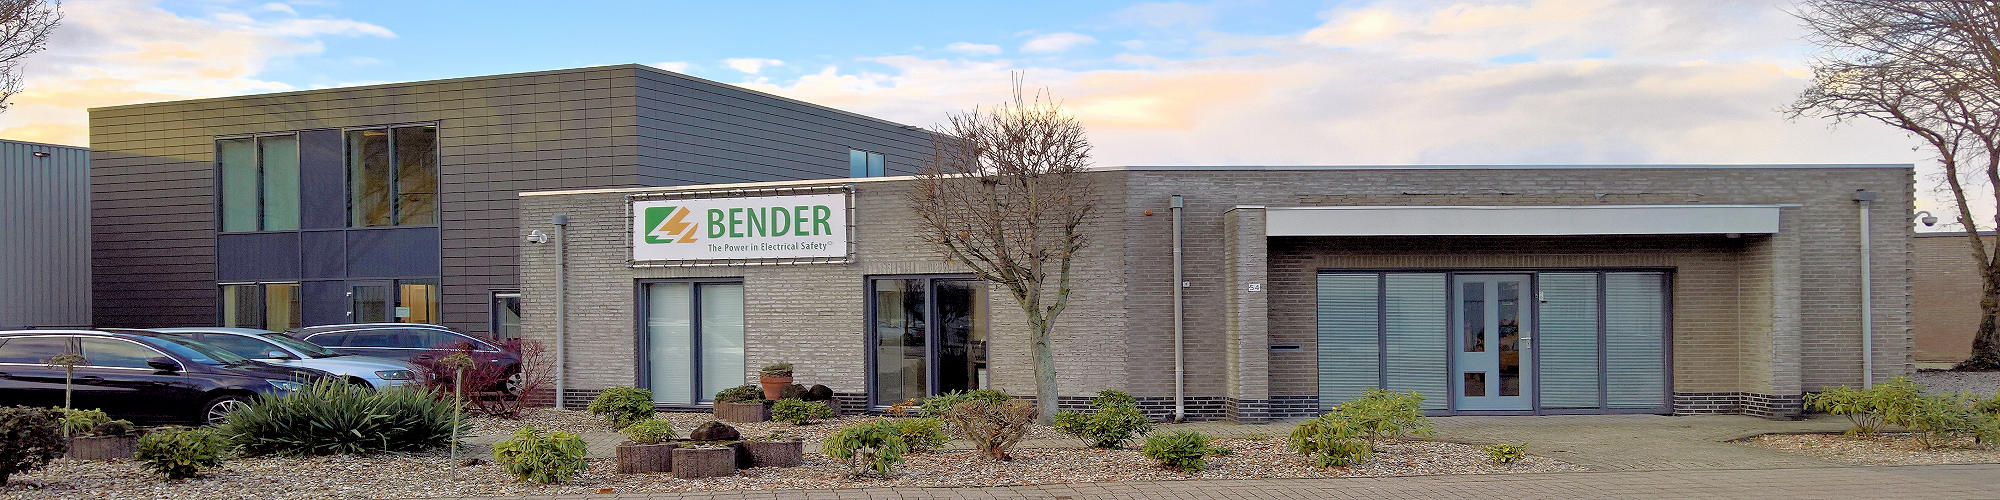 Bender-Benelux_header